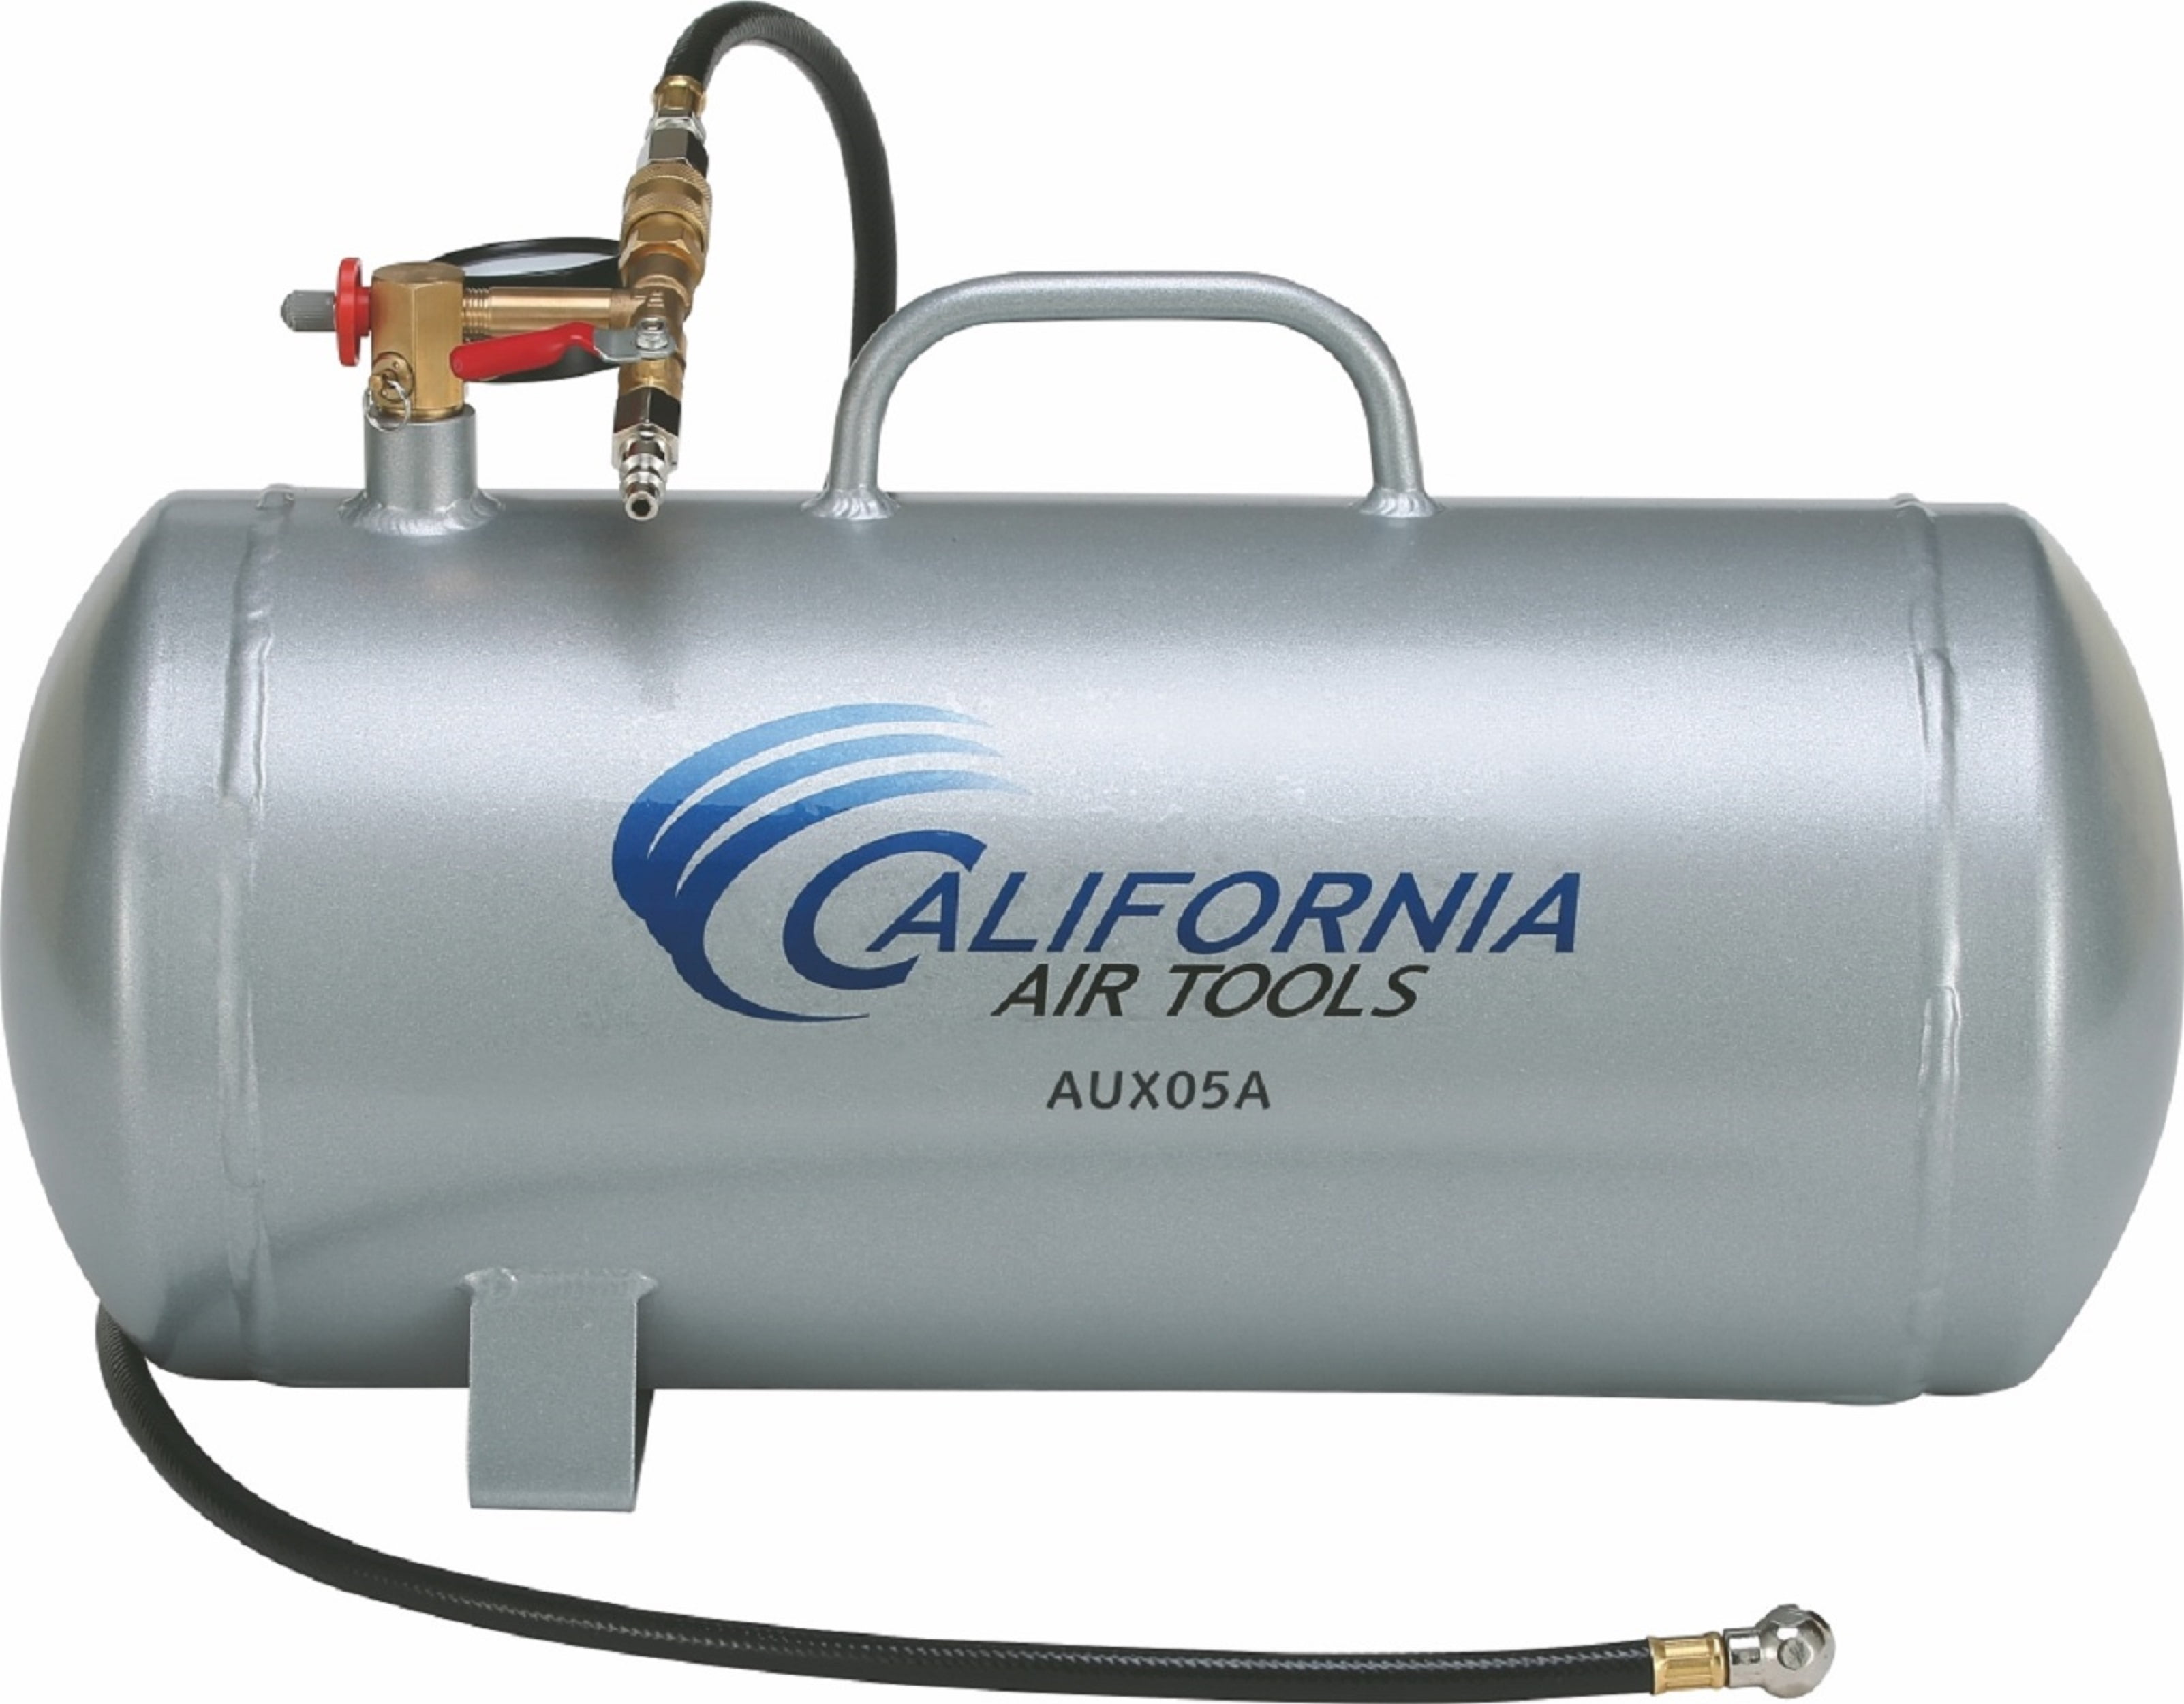 California Air Tools AUX05A - 5 Gallon Lightweight (Rust Free) Portable Aluminum Air Tank